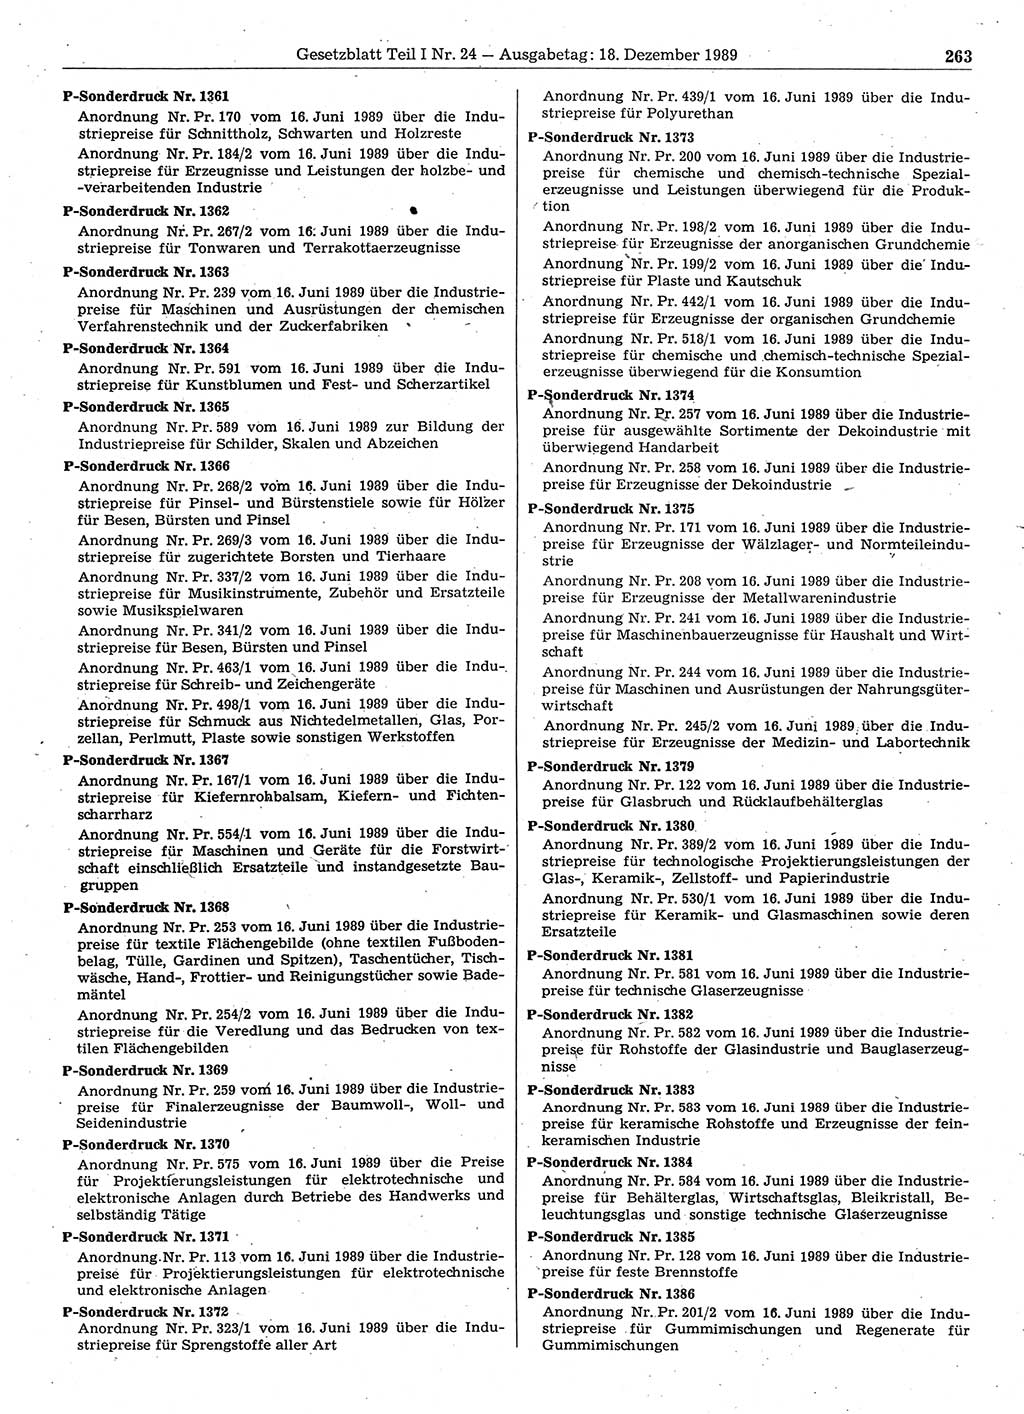 Gesetzblatt (GBl.) der Deutschen Demokratischen Republik (DDR) Teil Ⅰ 1989, Seite 263 (GBl. DDR Ⅰ 1989, S. 263)